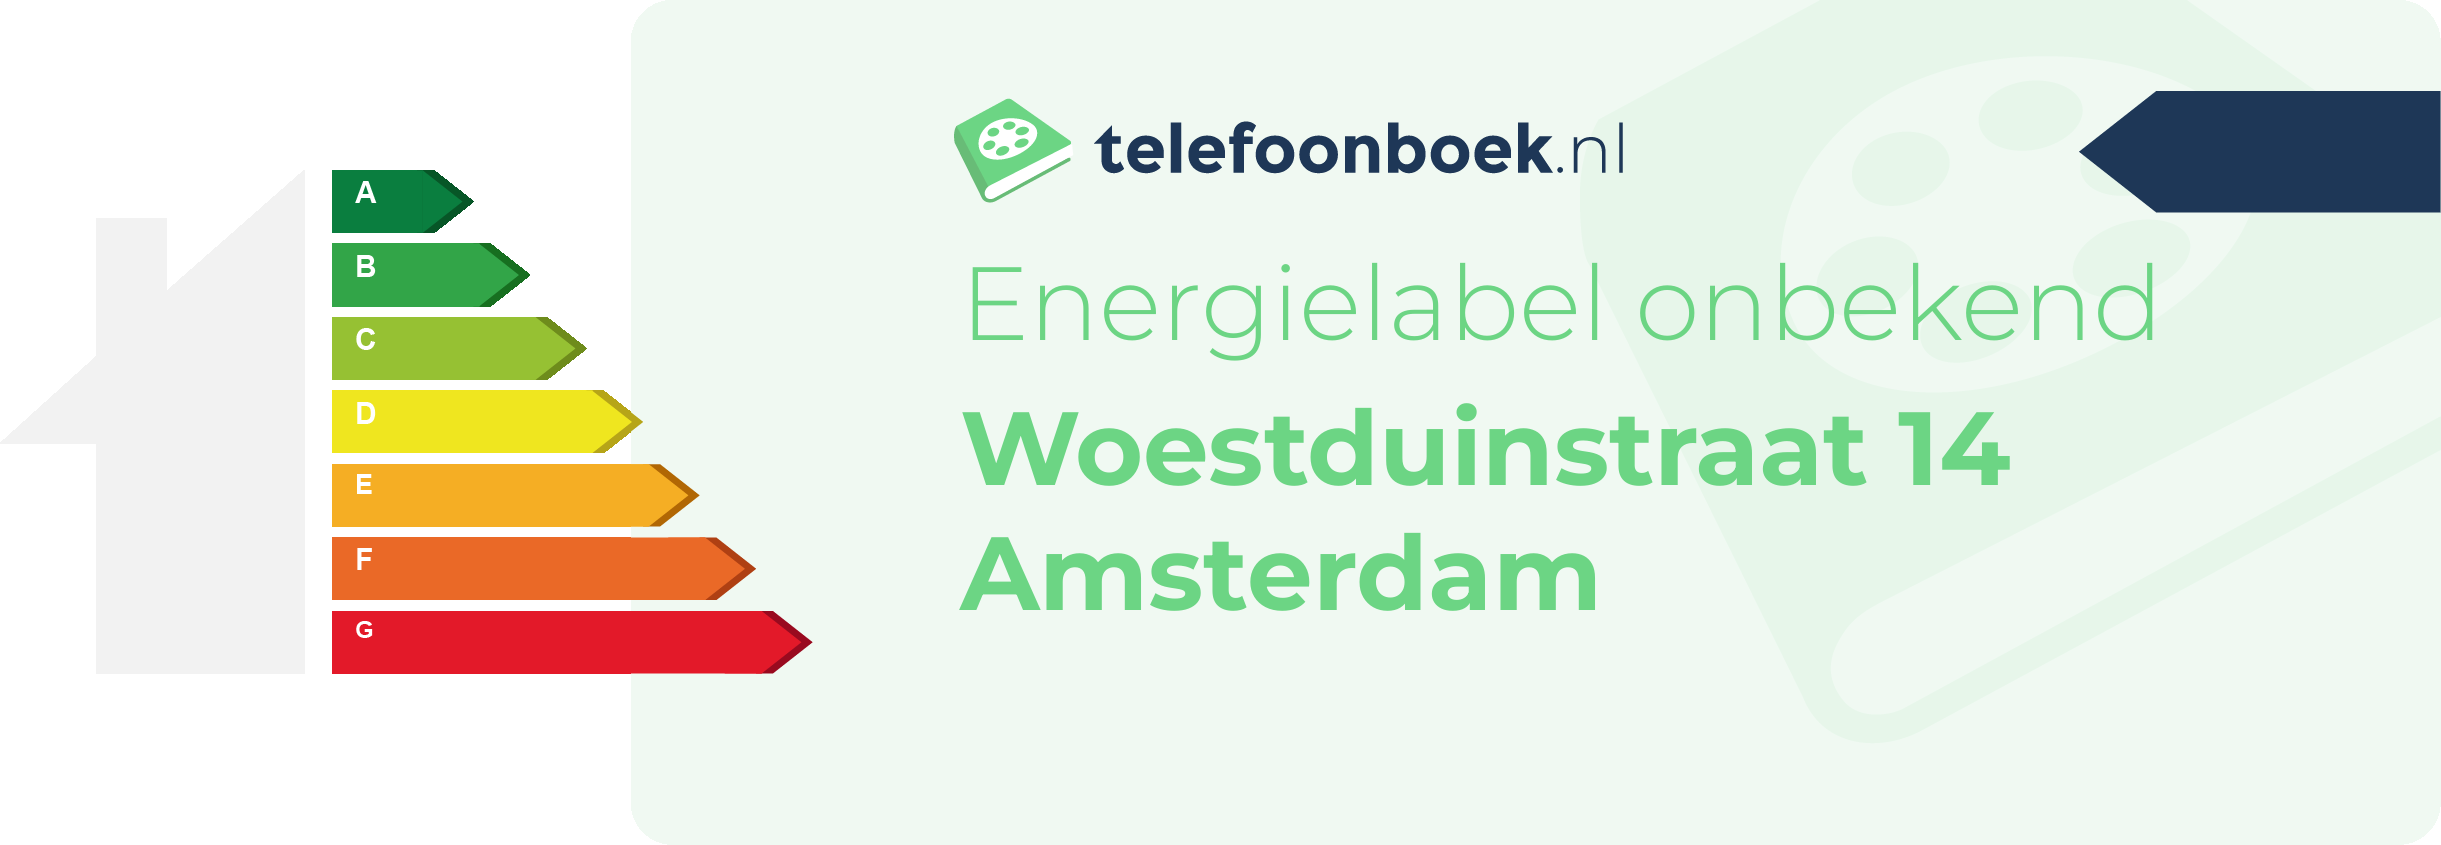 Energielabel Woestduinstraat 14 Amsterdam